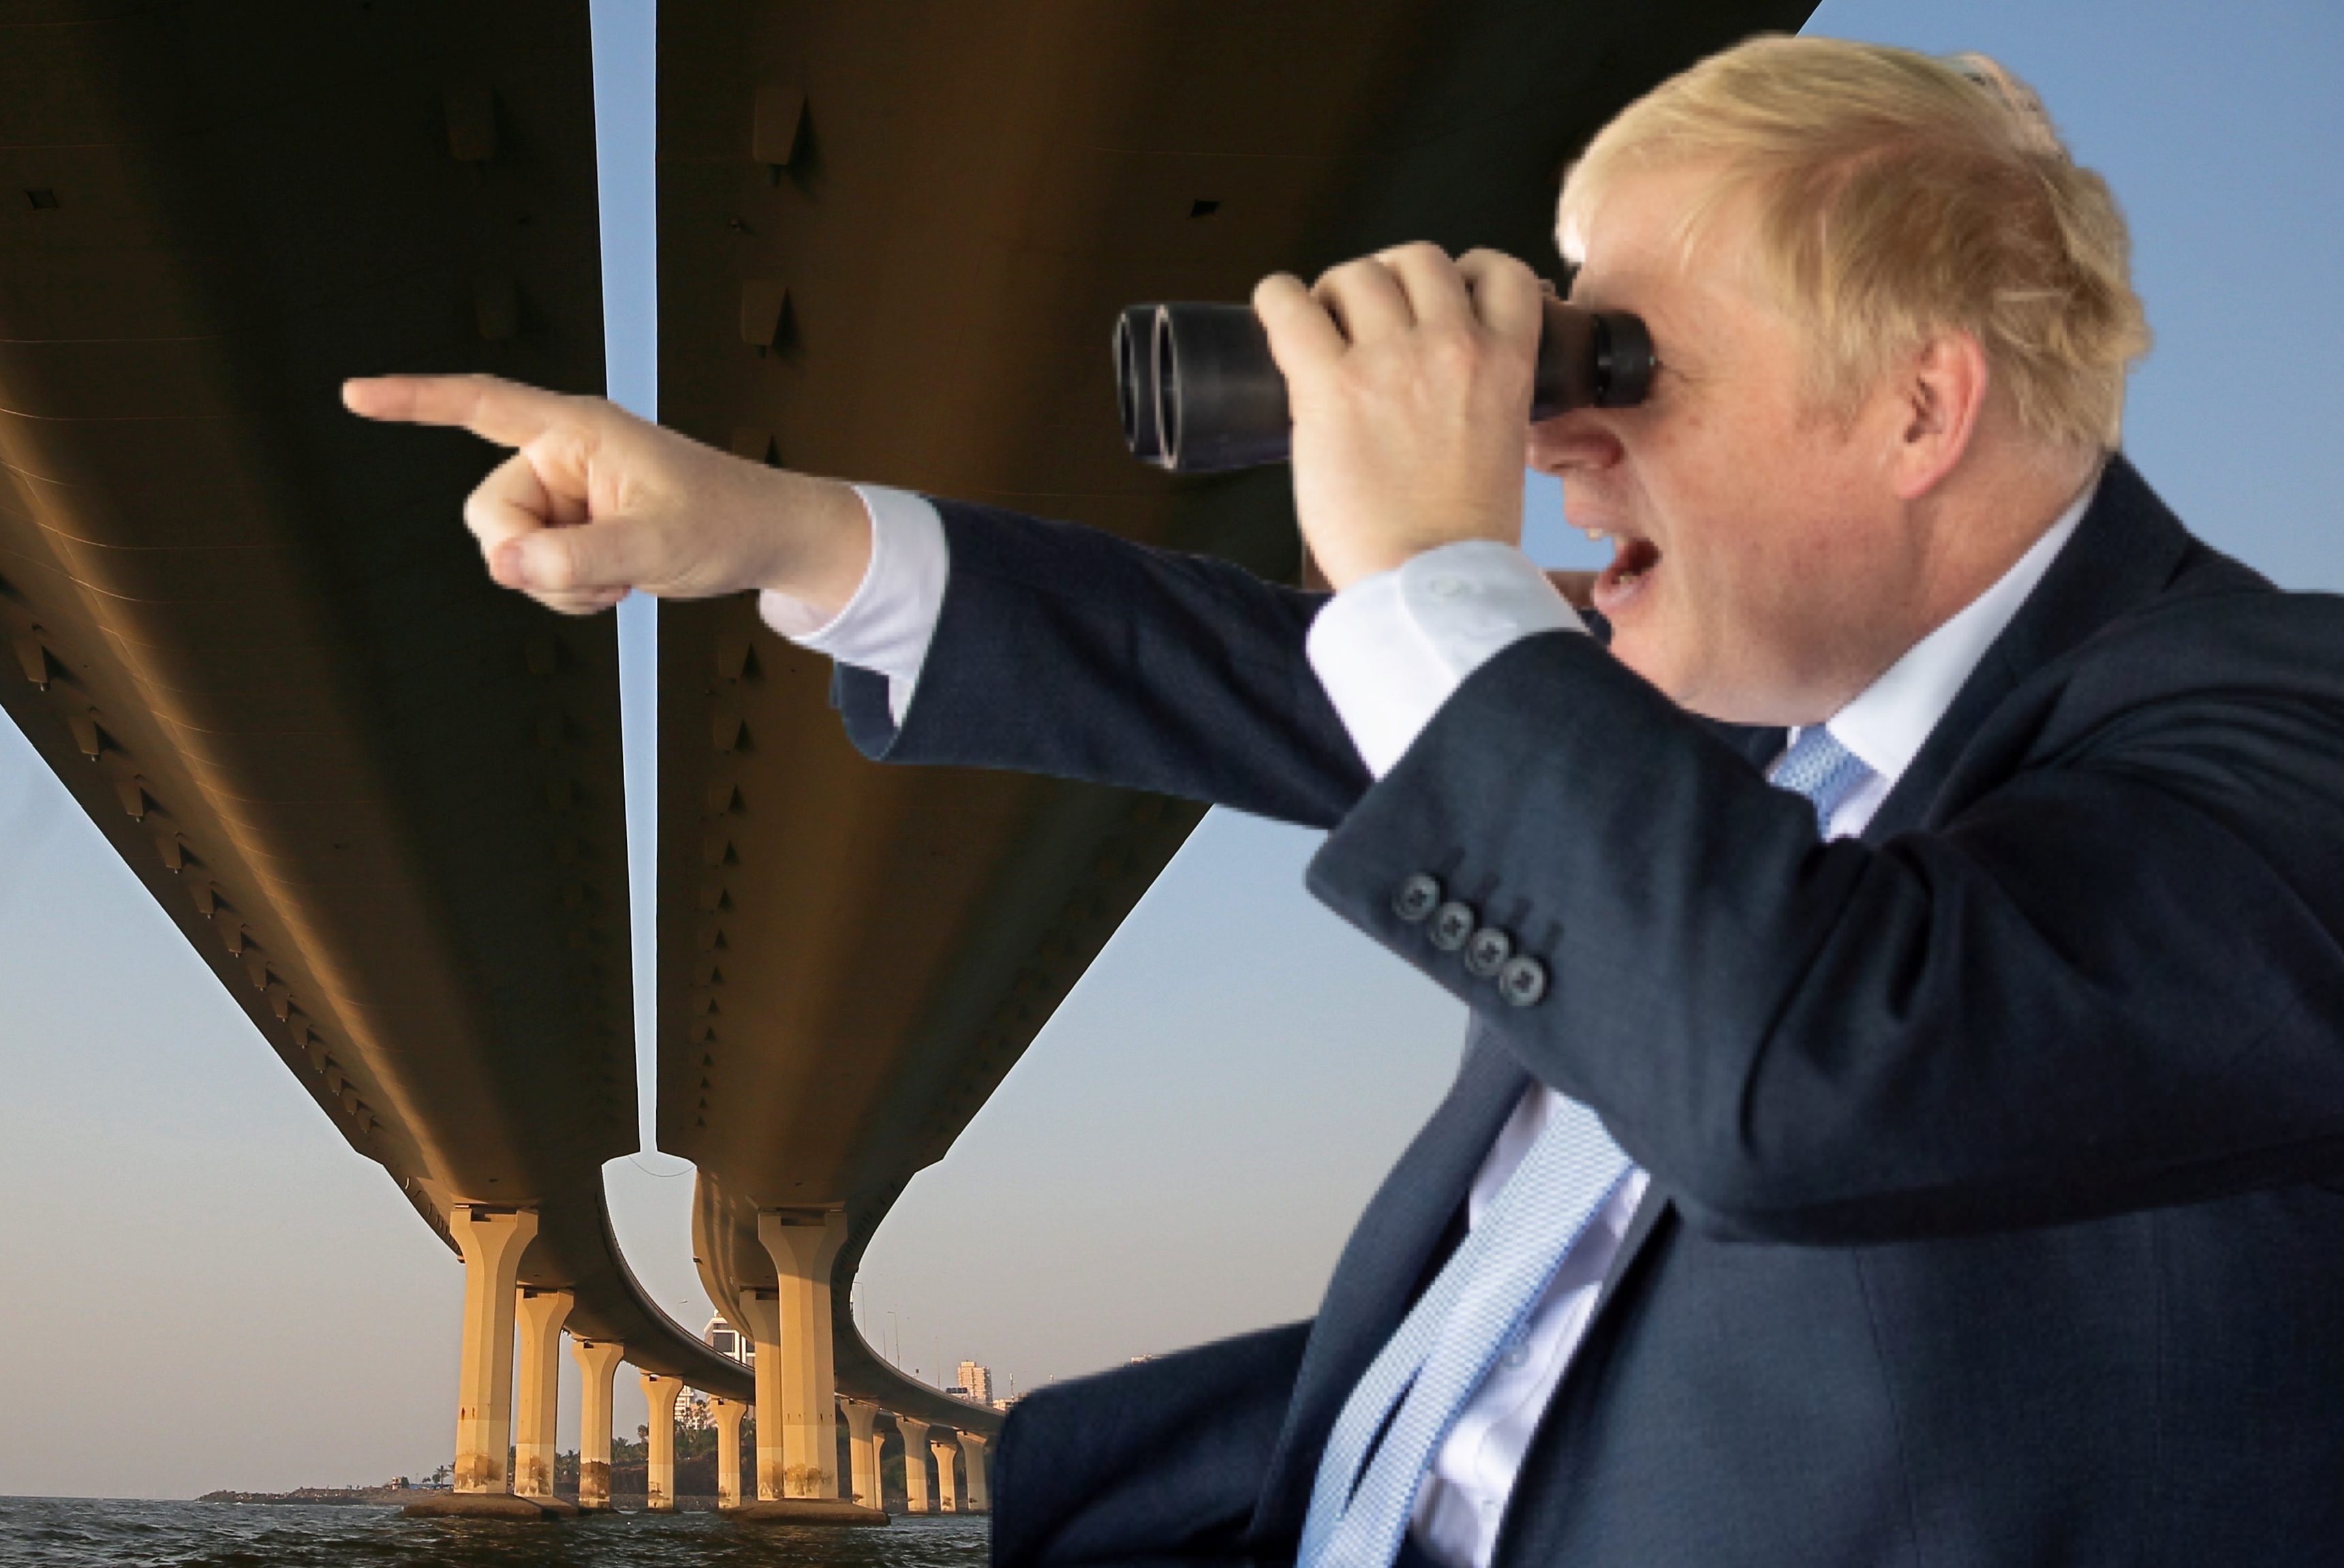 Het plan van de Britse premier Boris Johnson om een brug te bouwen over de Ierse Zee is omstreden. Er kleven grote risico's aan de bouw van zo'n verbinding tussen Schotland en Noord-Ierland, zegt de wereldberoemde ingenieur Ian Firth tegen Business Insider.